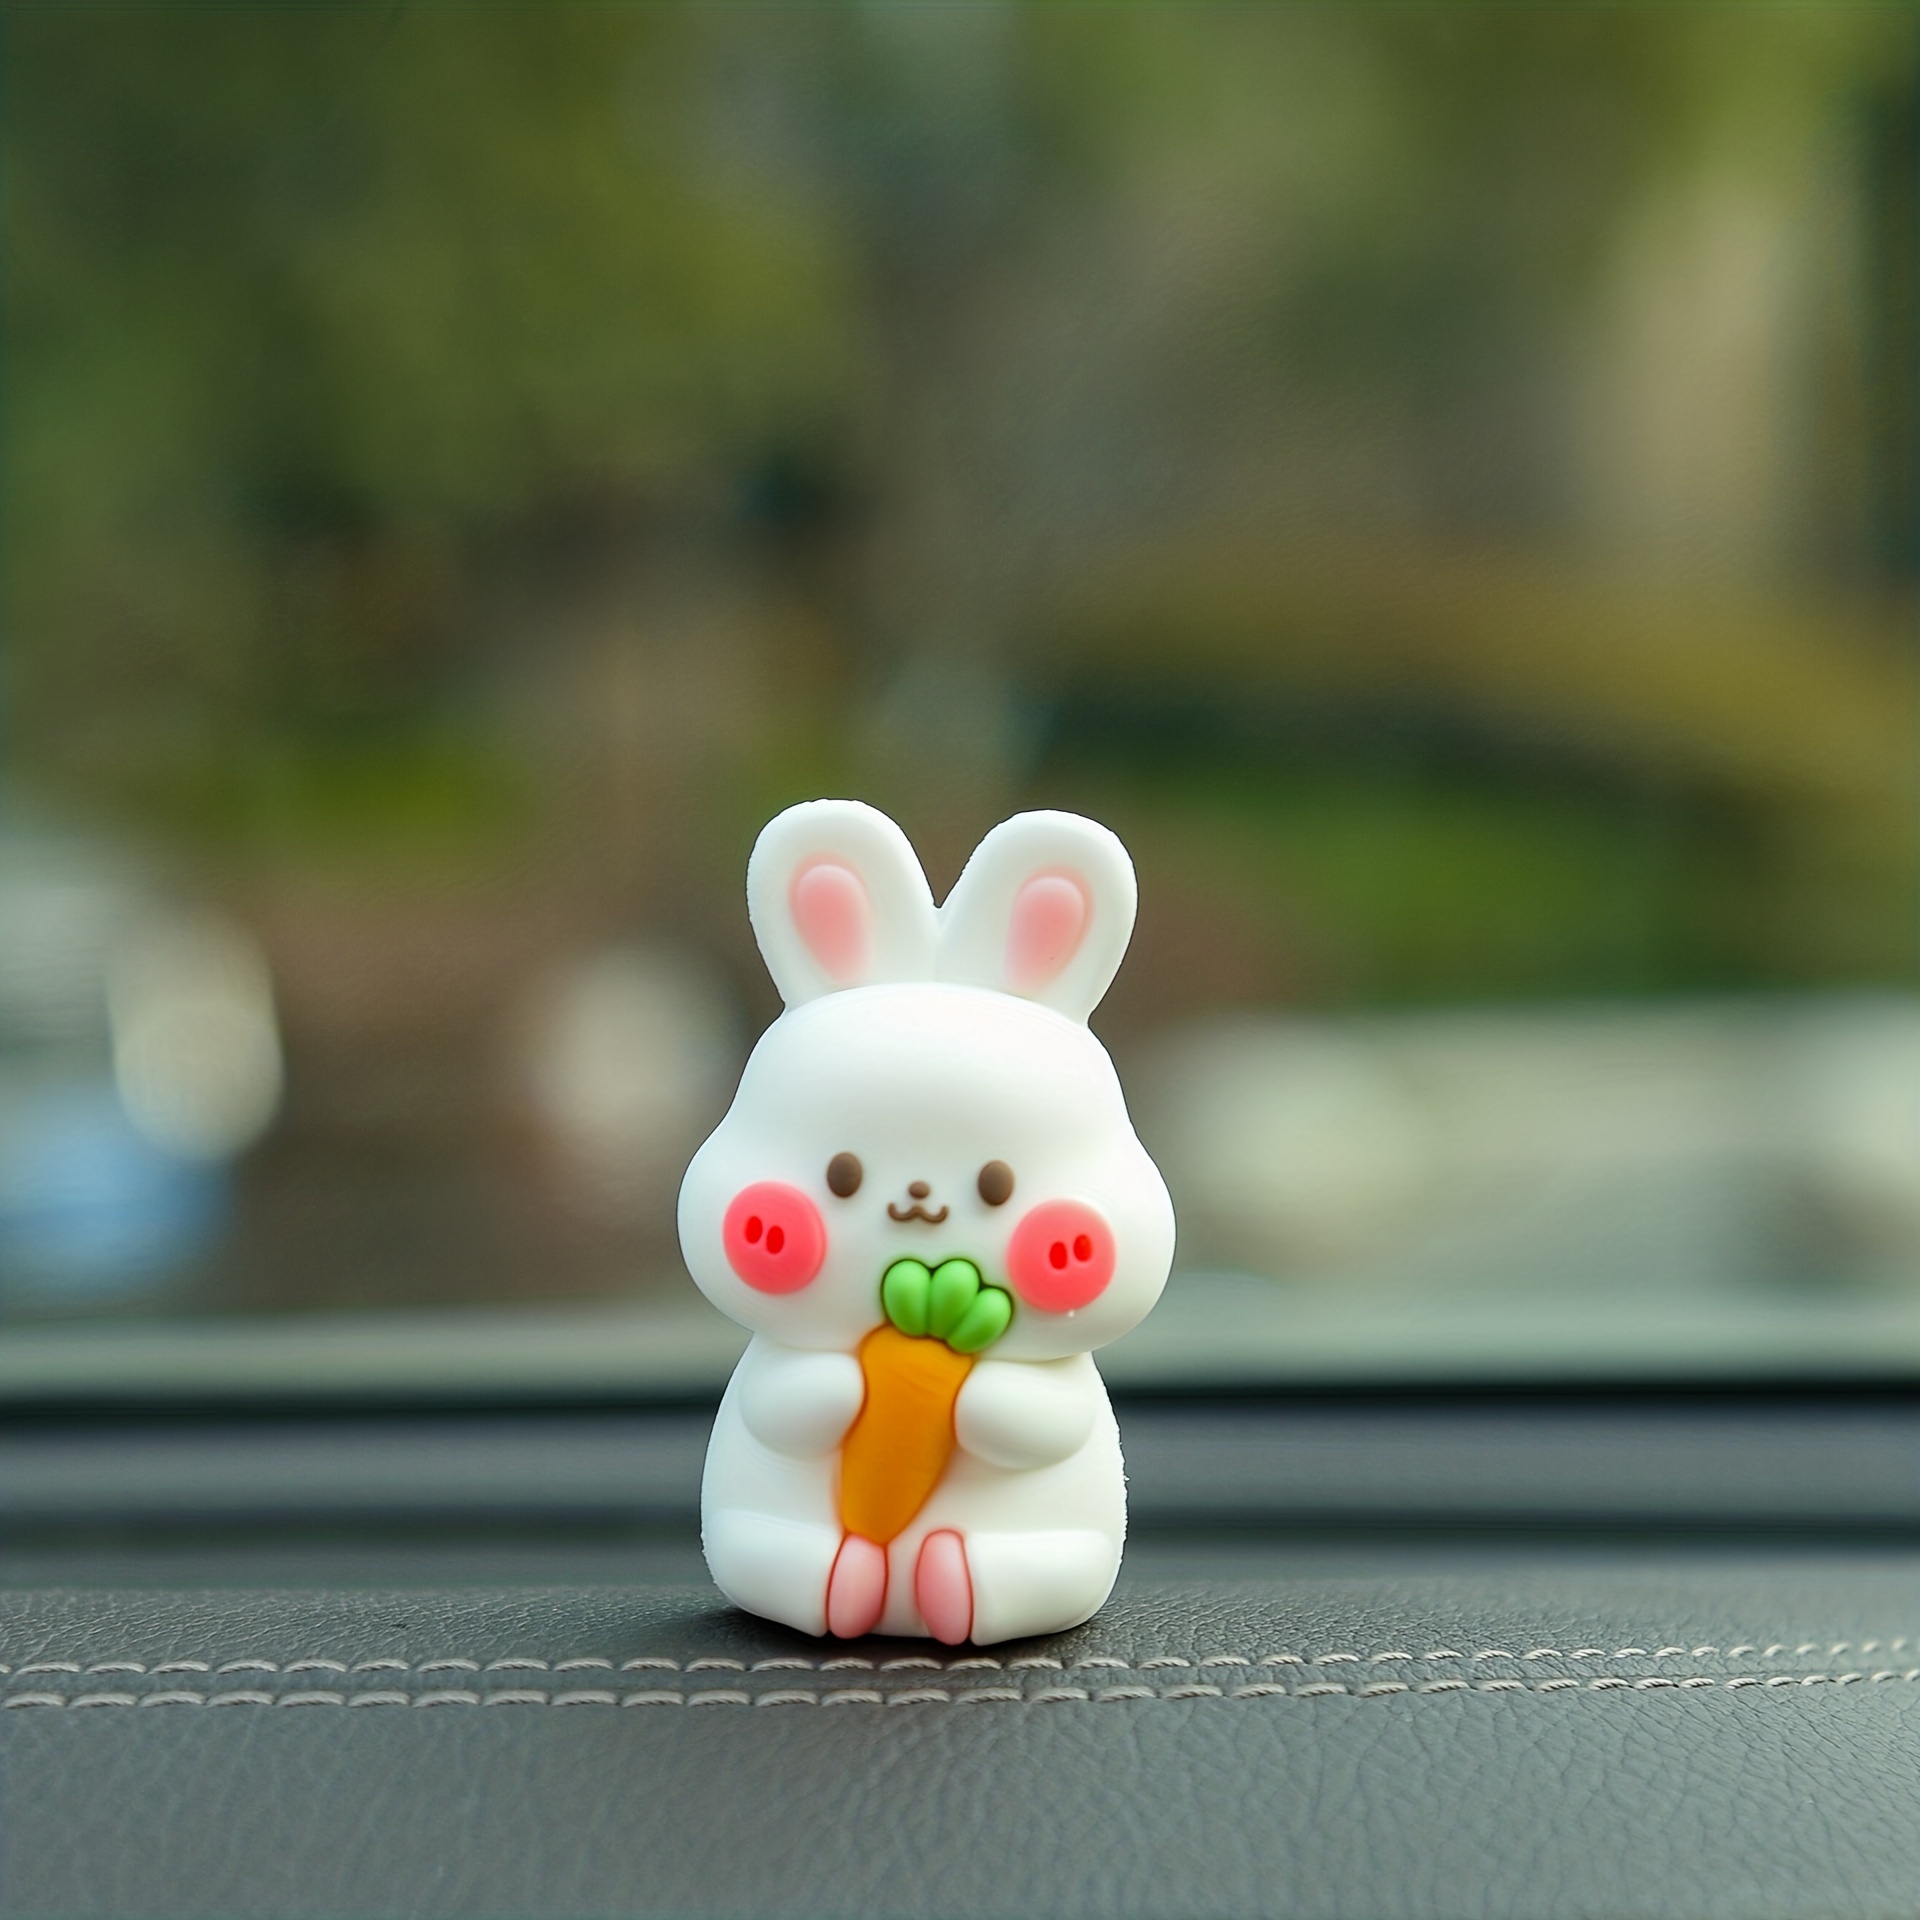 Mini Car Decorations Cute Cartoon Mushroom Carrot Bunny Car - Temu